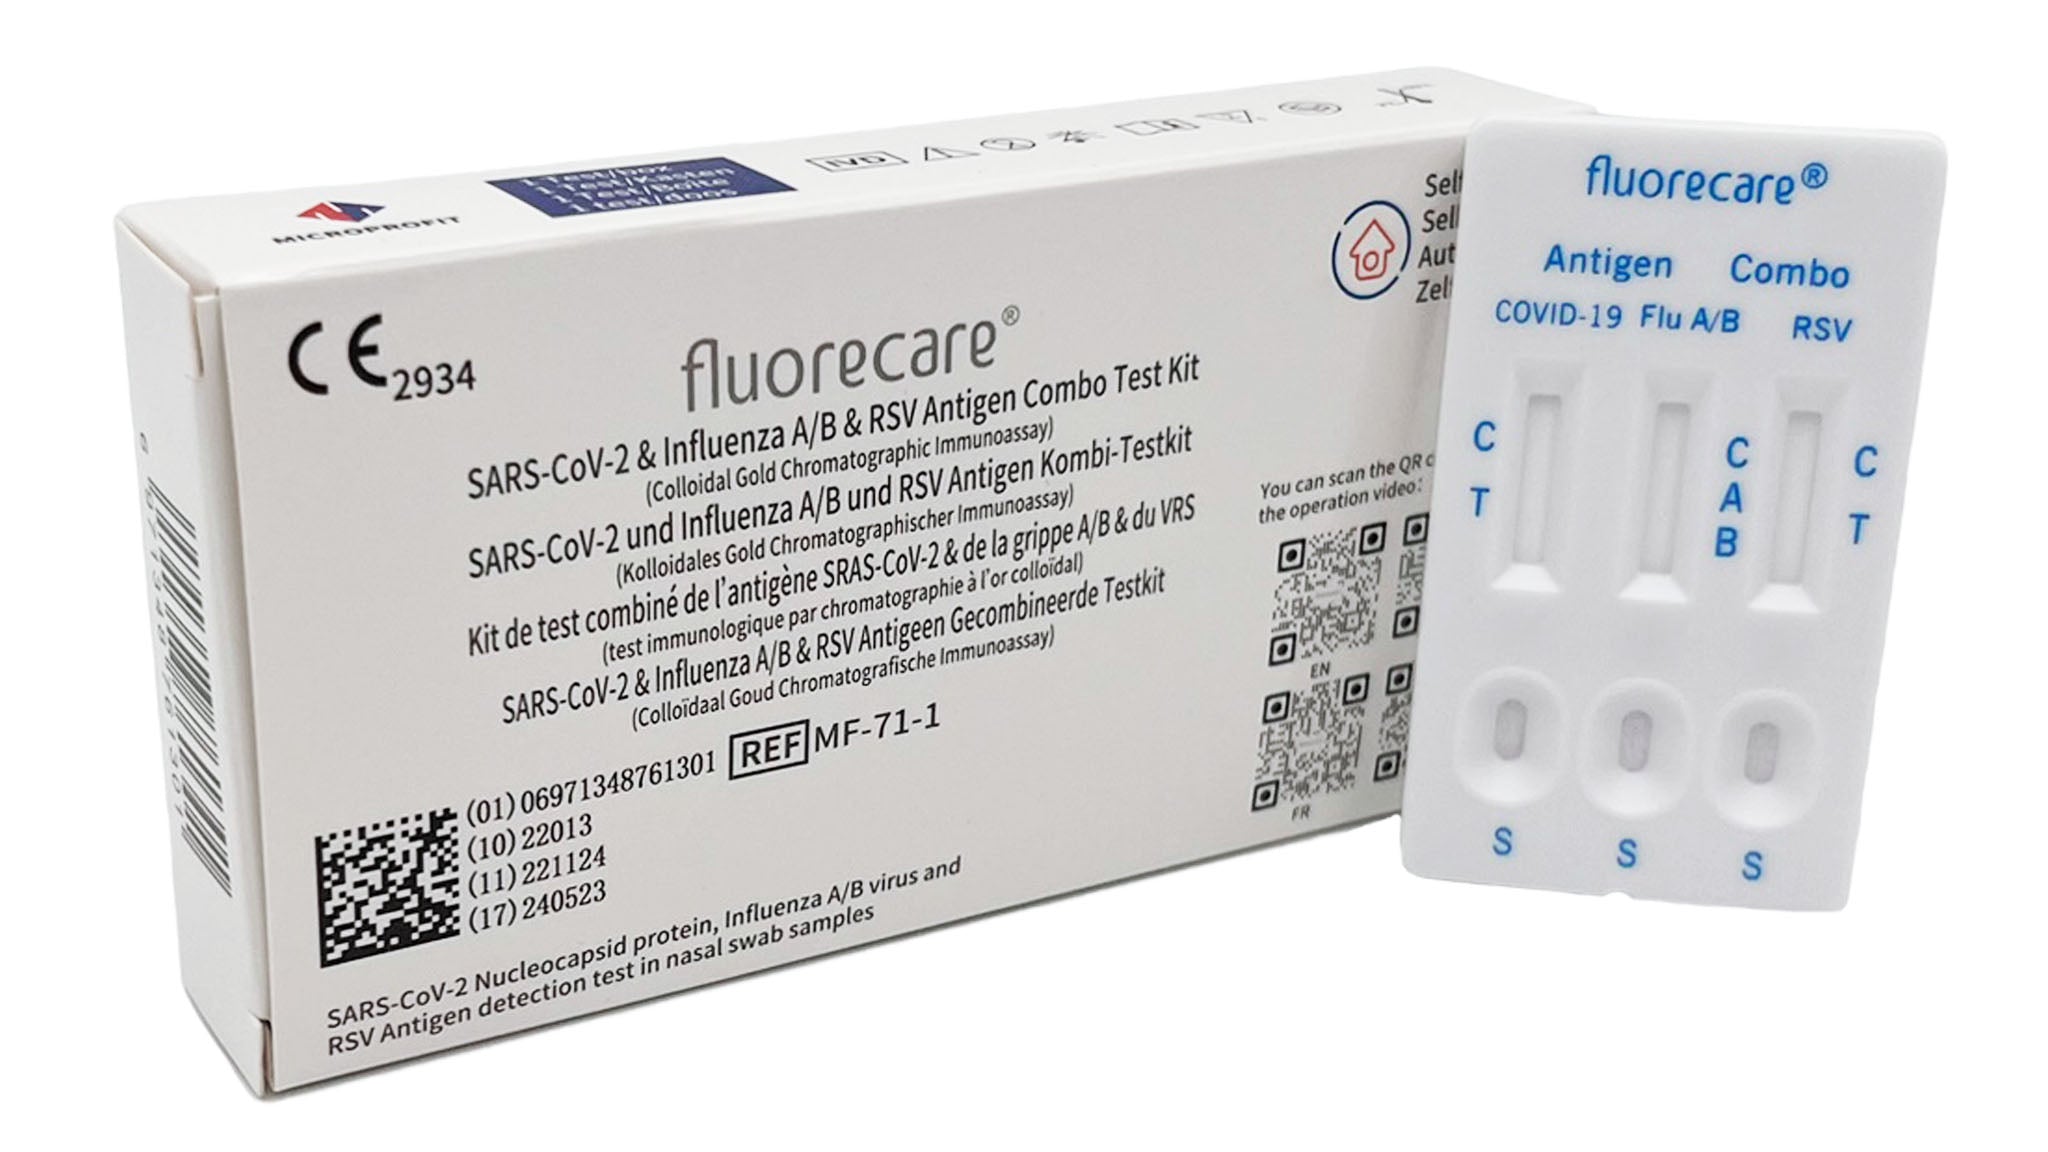 Fluorecare SARS-CoV-2, Influenza A+B & RSV Antigen Combo Test einzeln verpackt